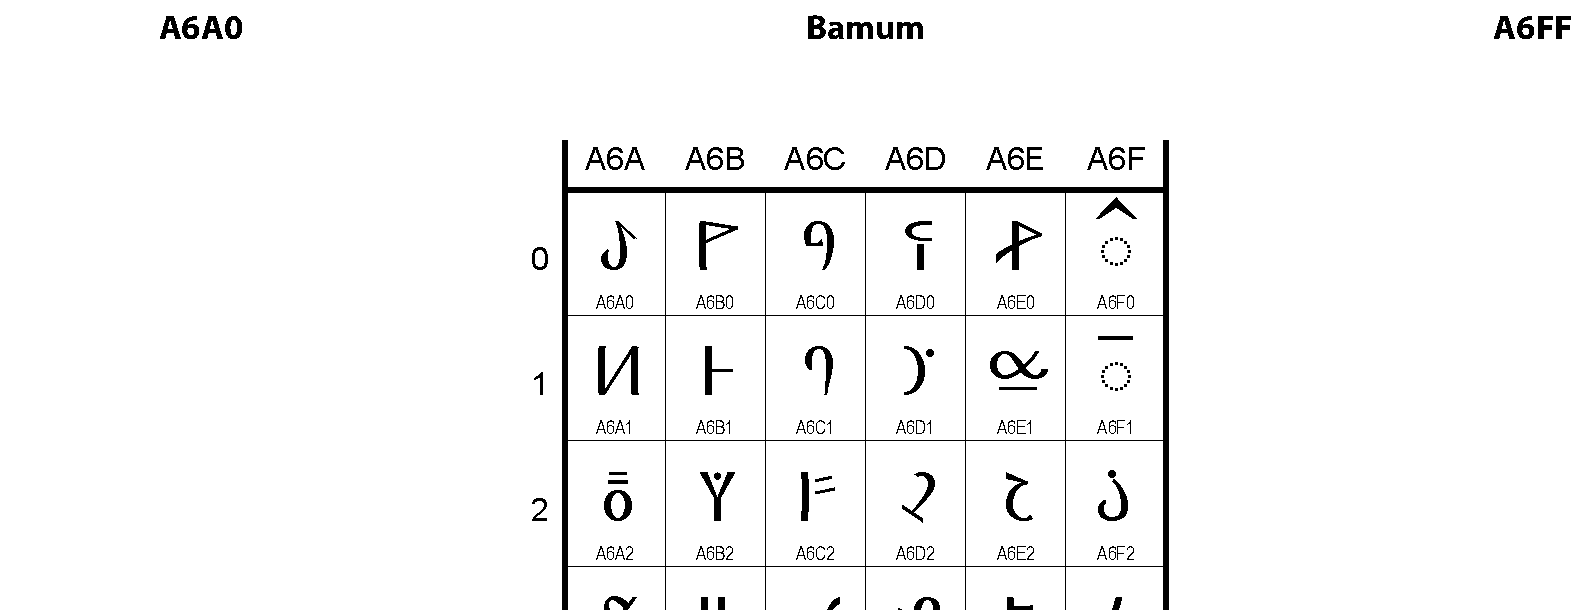 Unicode - Bamum